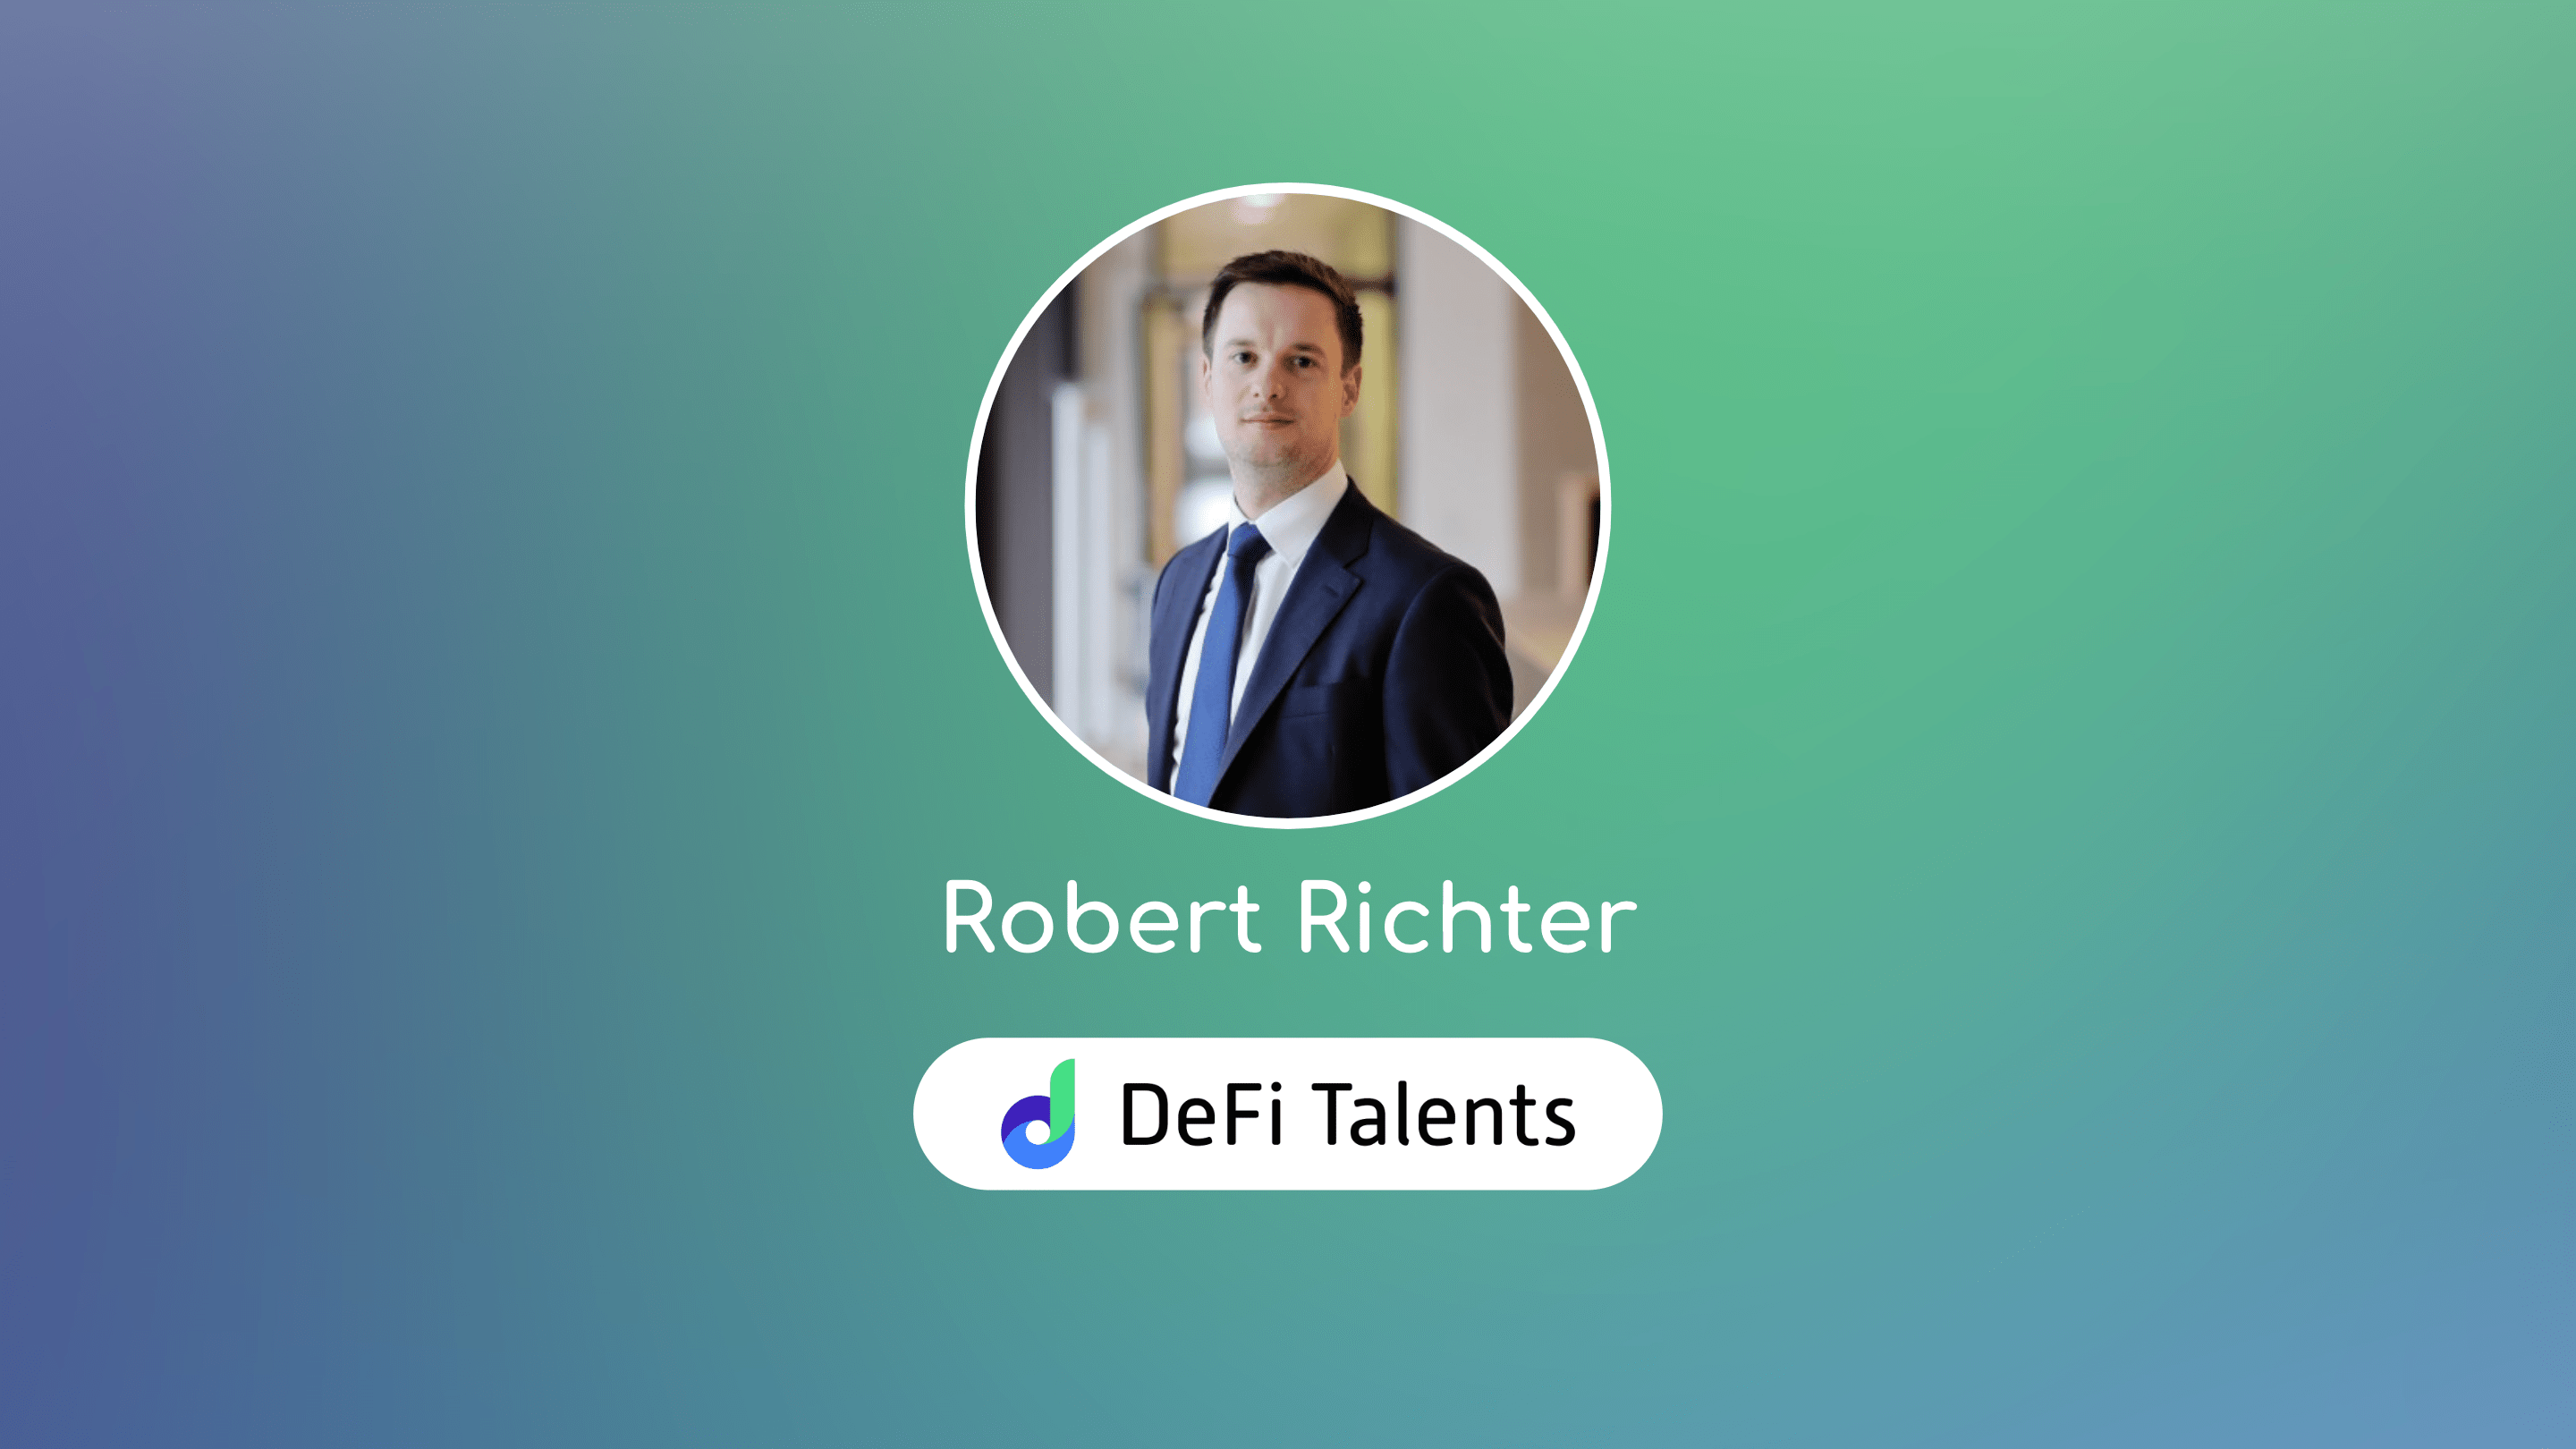 DeFi Talents Mentor – Robert Richter